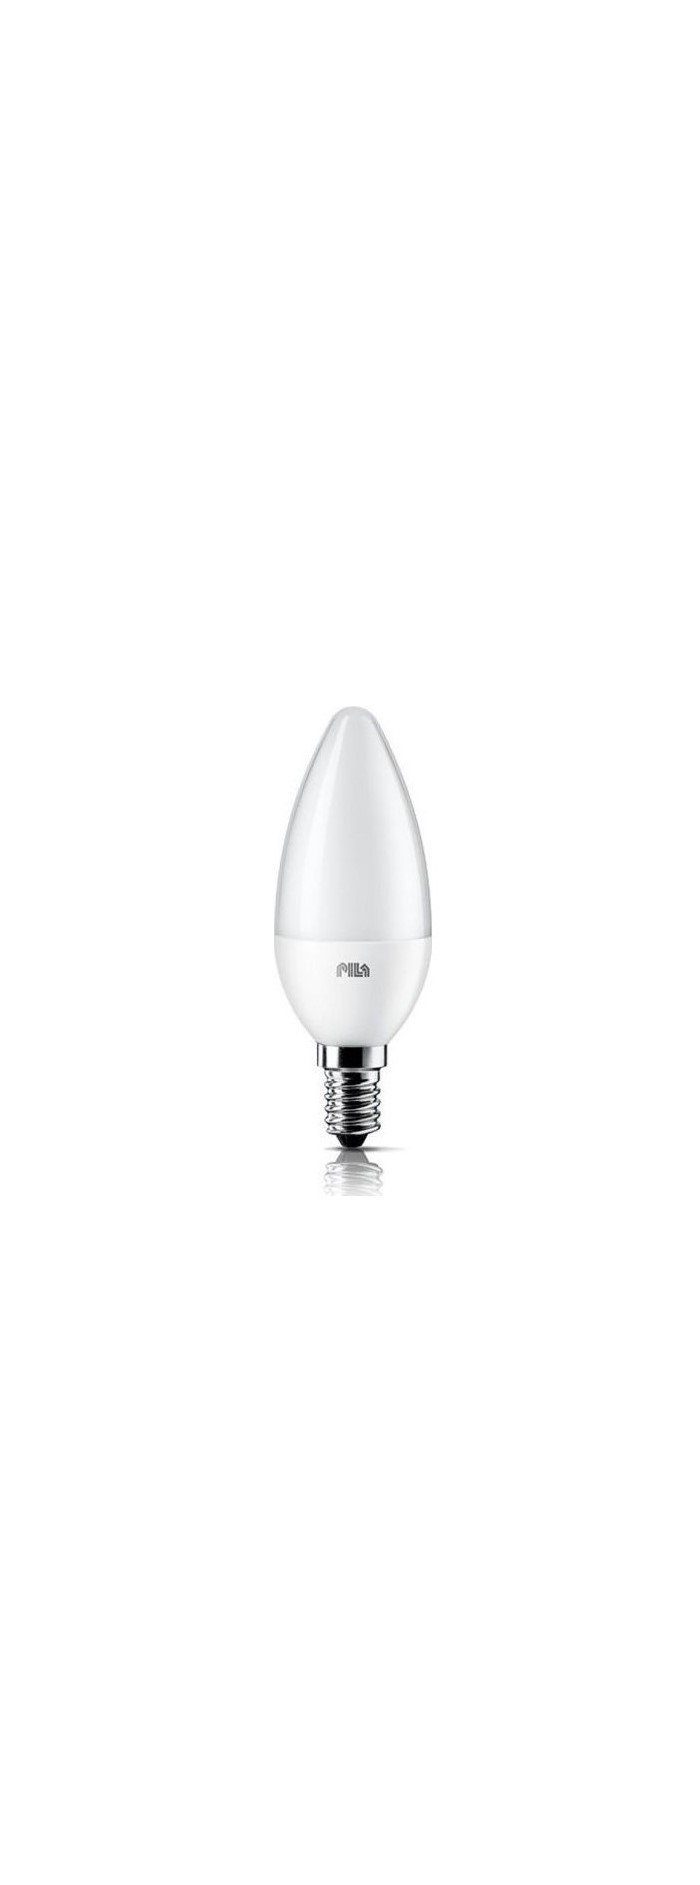 PILA LED-Leuchtmittel Pila LED E14 B35 Kerzenform 3,2W = 25W 250lm 230V Warmweiß 2700K, E14, Warmweiß